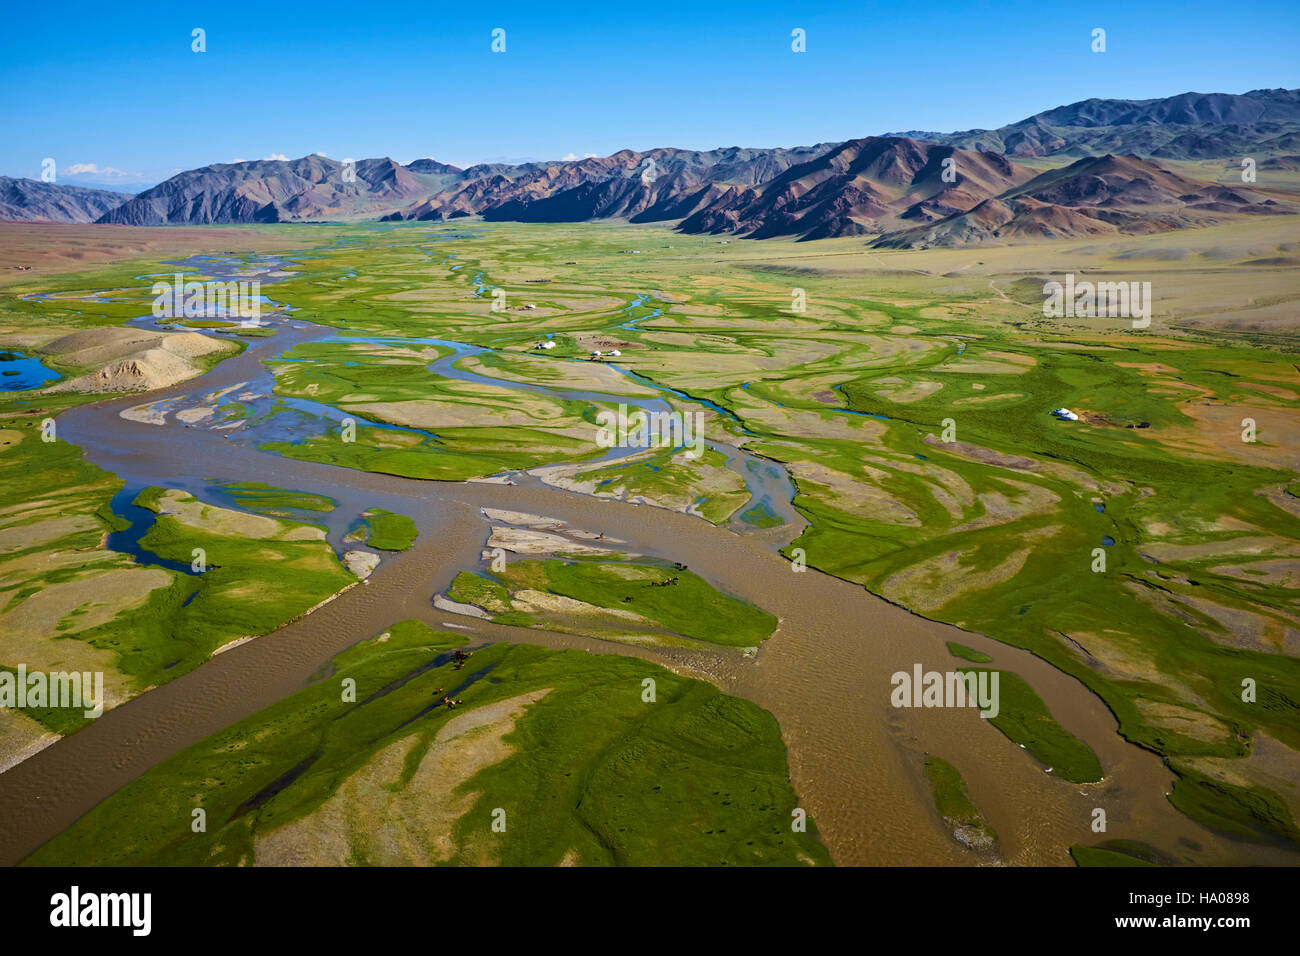 La Mongolie, Bayan-Ulgii province, l'ouest de la Mongolie, le delta de la rivière Sagsay dans les montagnes de l'Altaï Banque D'Images